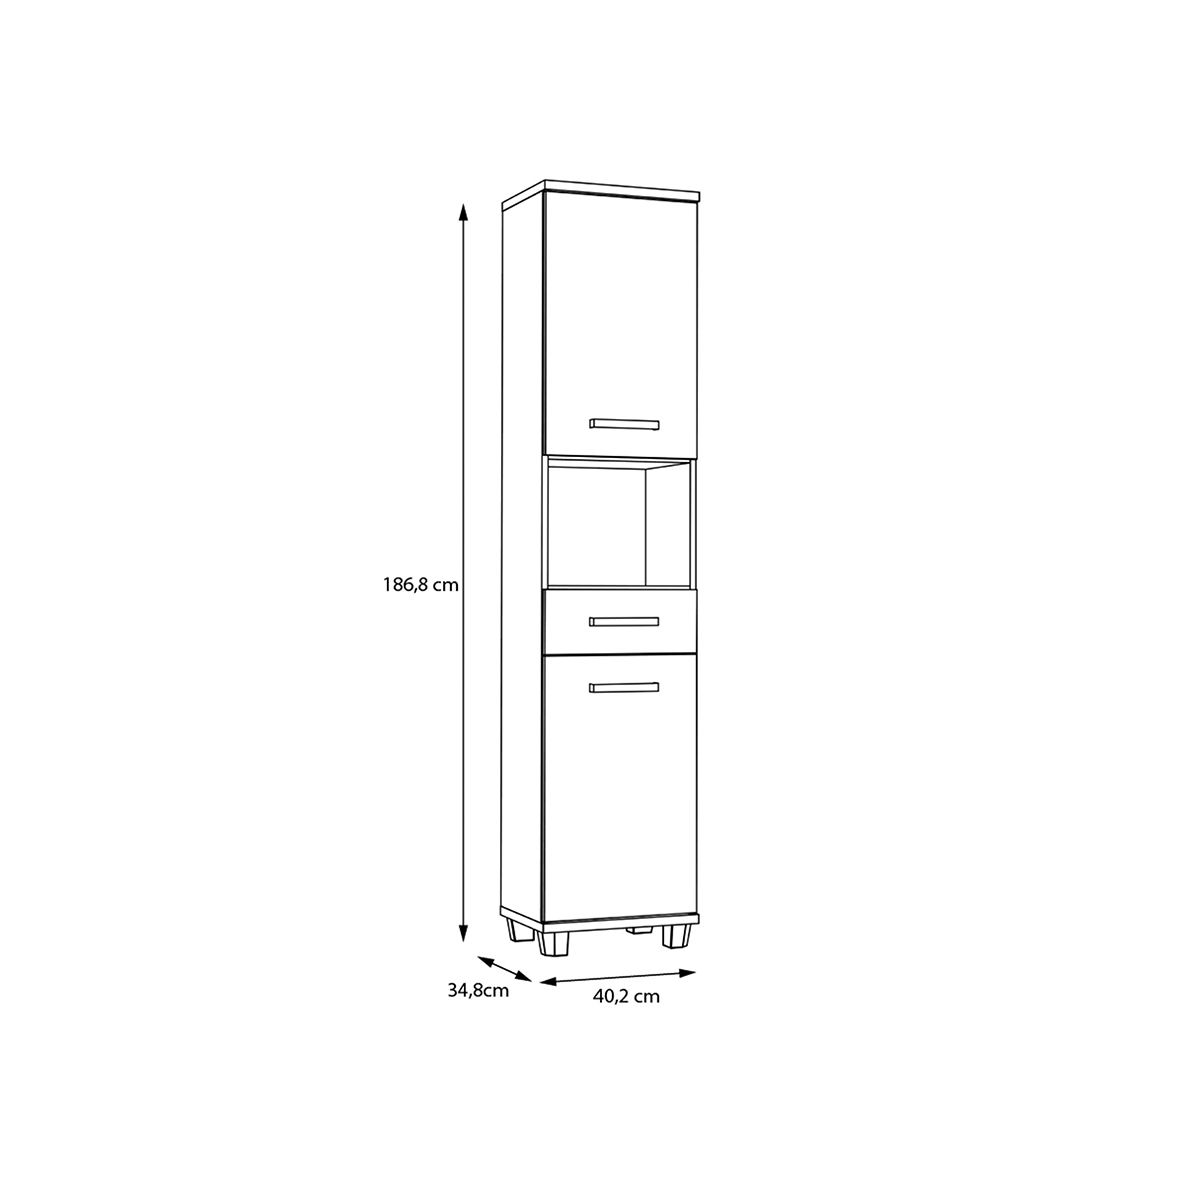 Feris fürdőszobai állószekrény 2 ajtóval, 1fiókkal, világos szürke/Artisantölgy 40,2x186,8x34,8cm